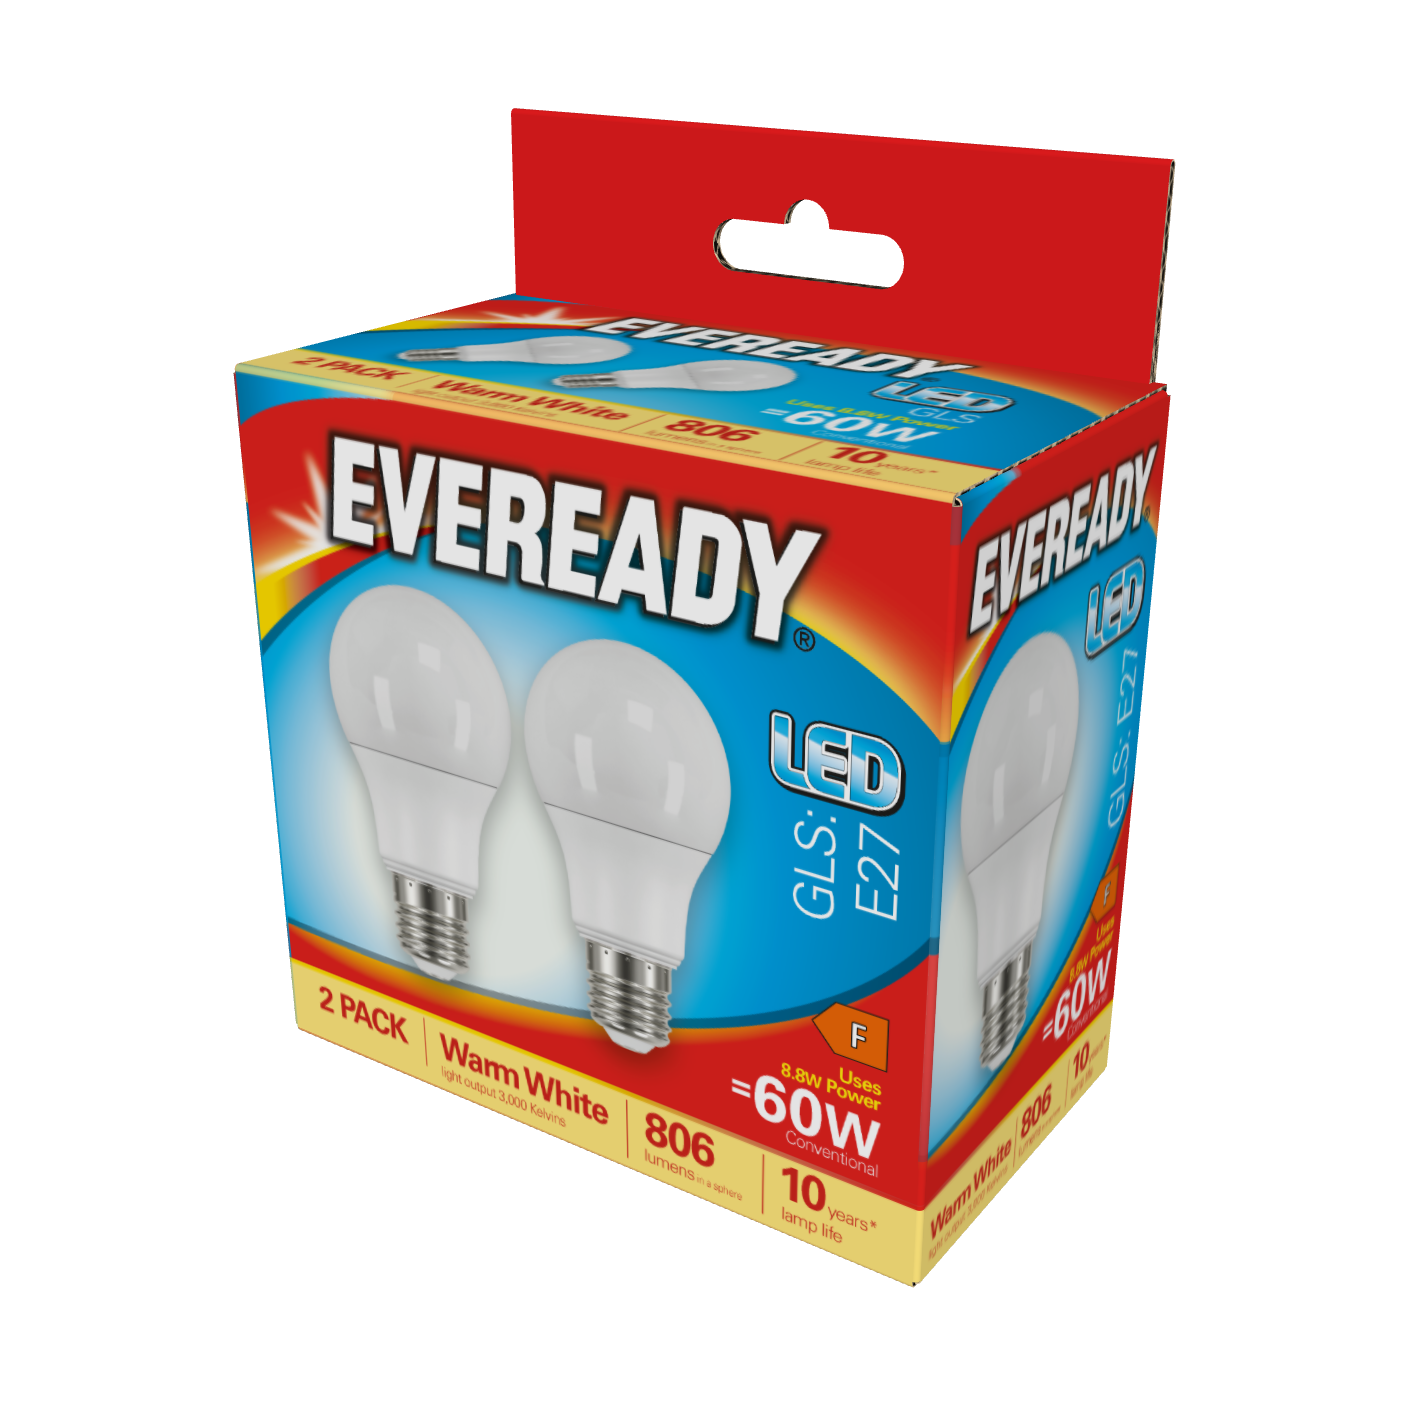 Eveready LED GLS E27 (ES) 806lm 8,8W 3.000K (Blanco Cálido), Caja de 2